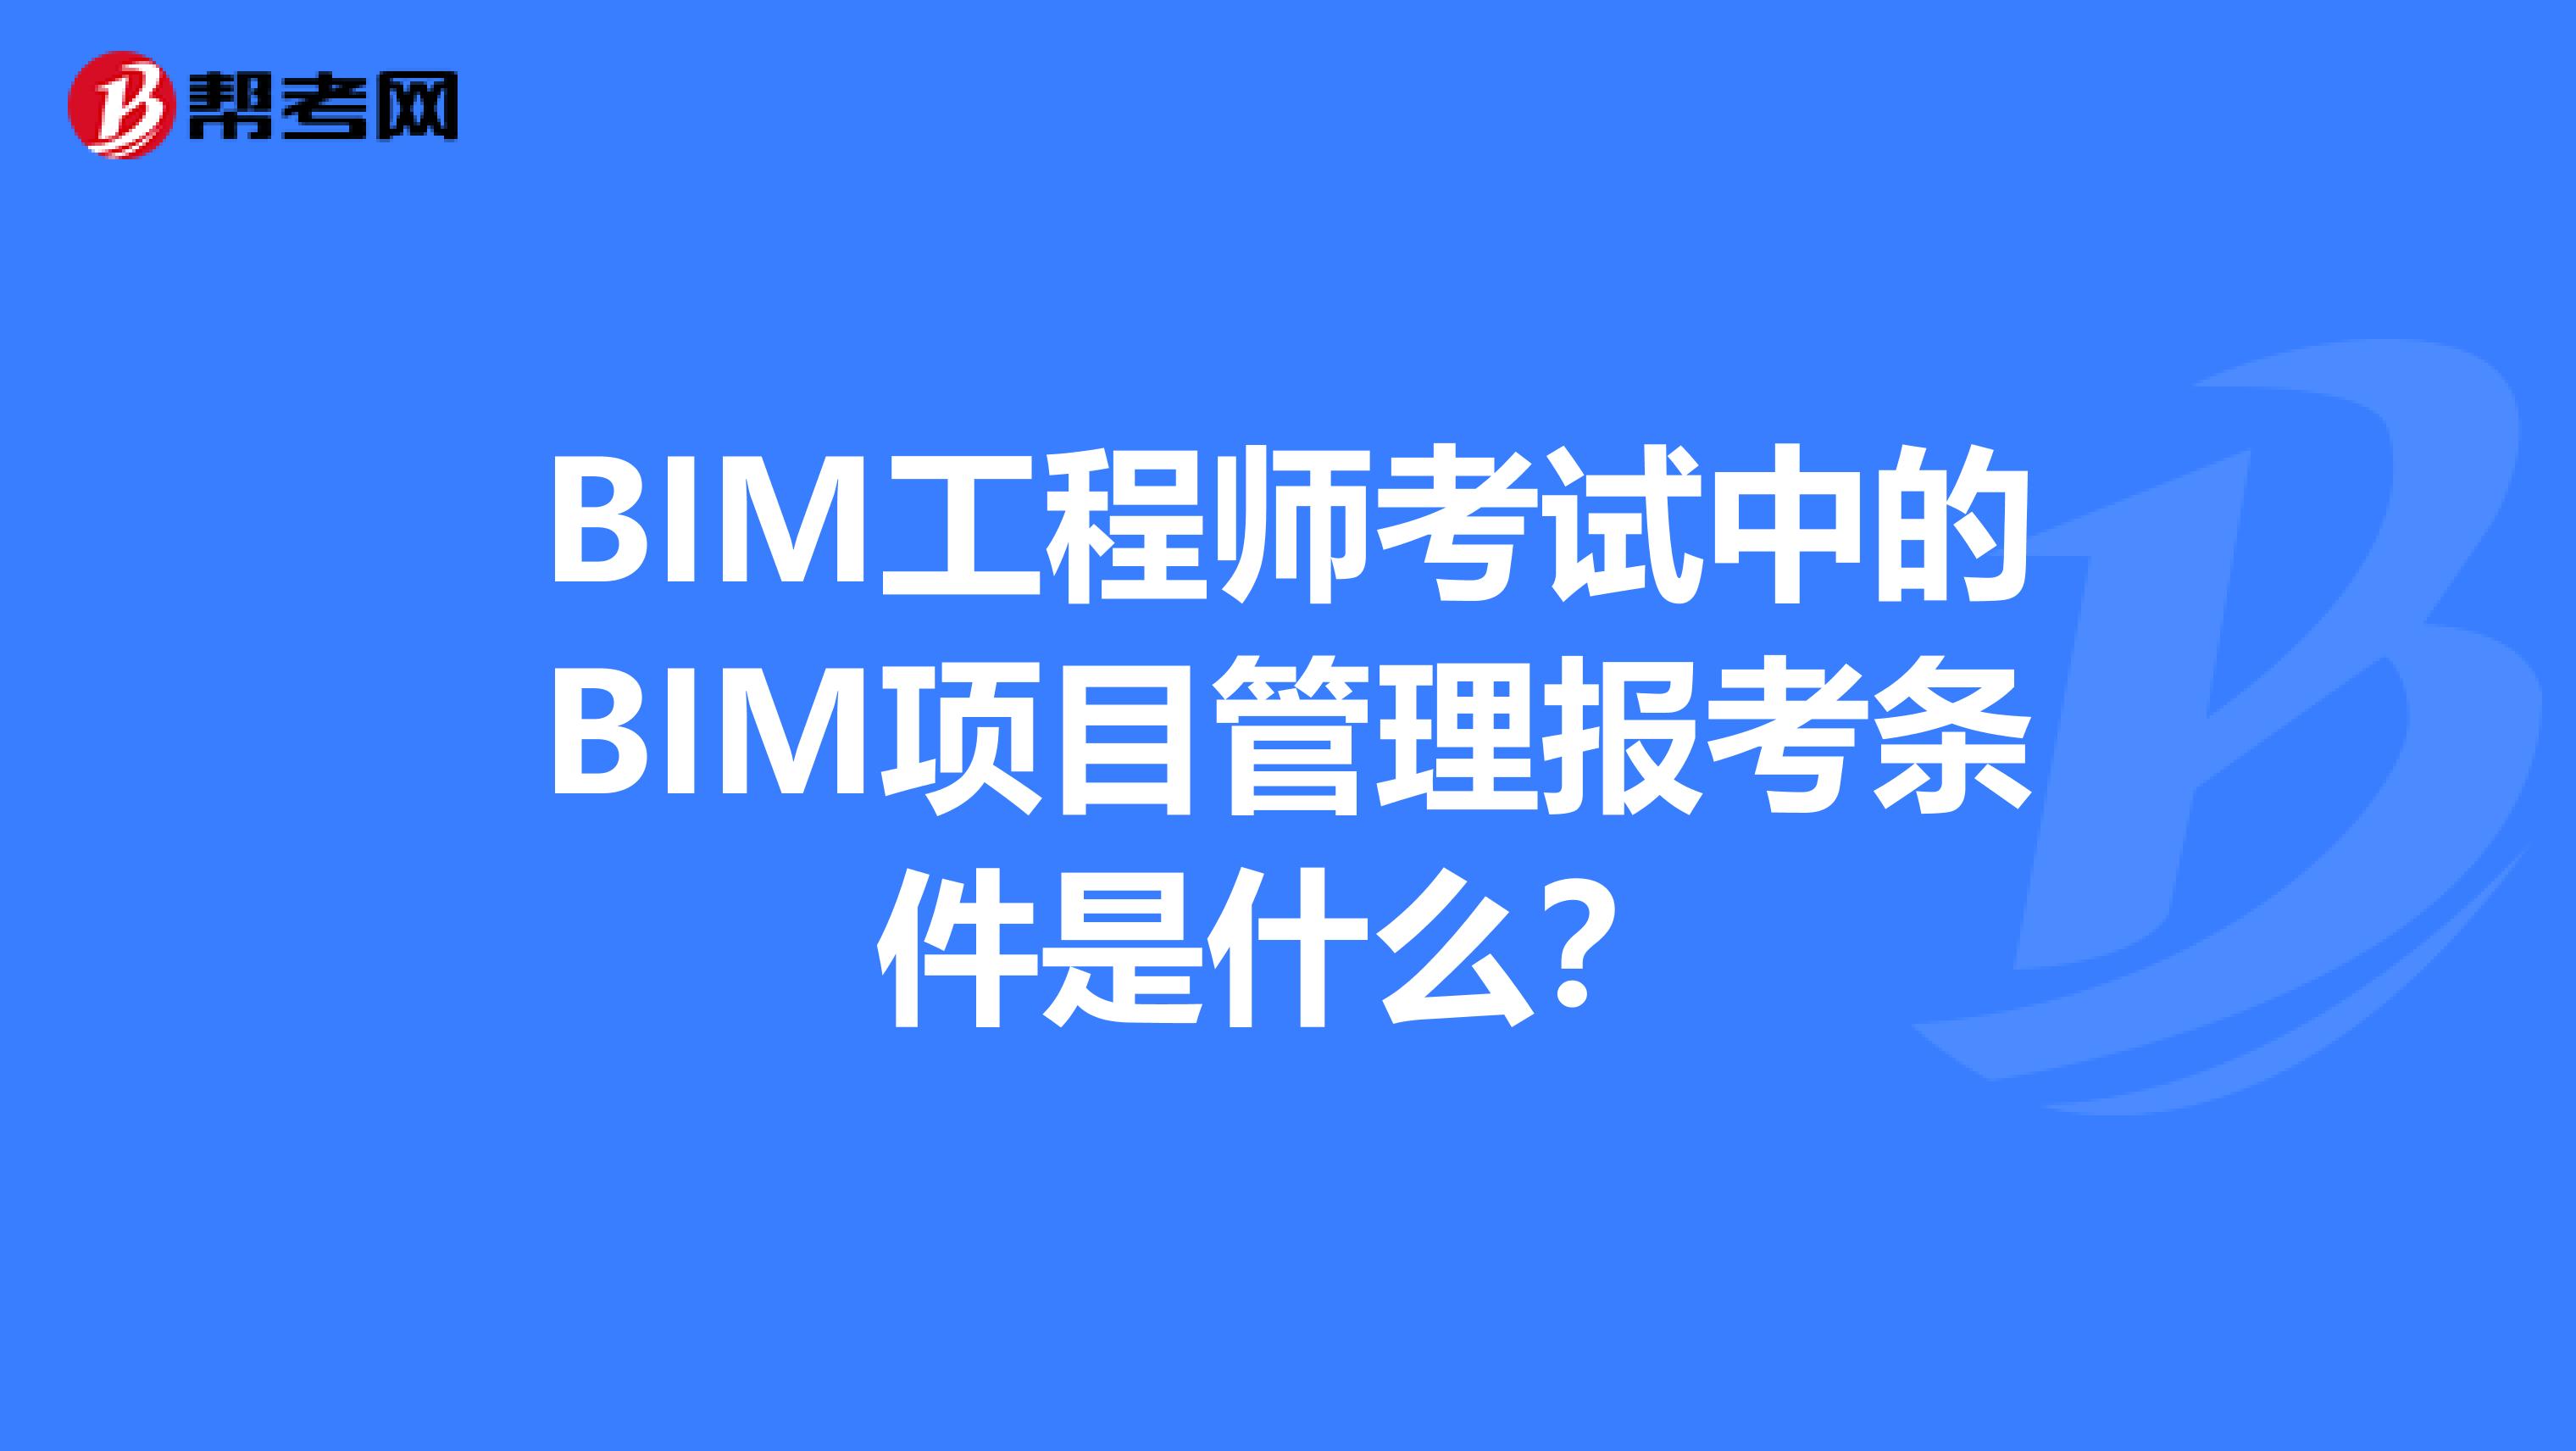 bim工程师哪里报考,bim工程师的报考条件  第1张